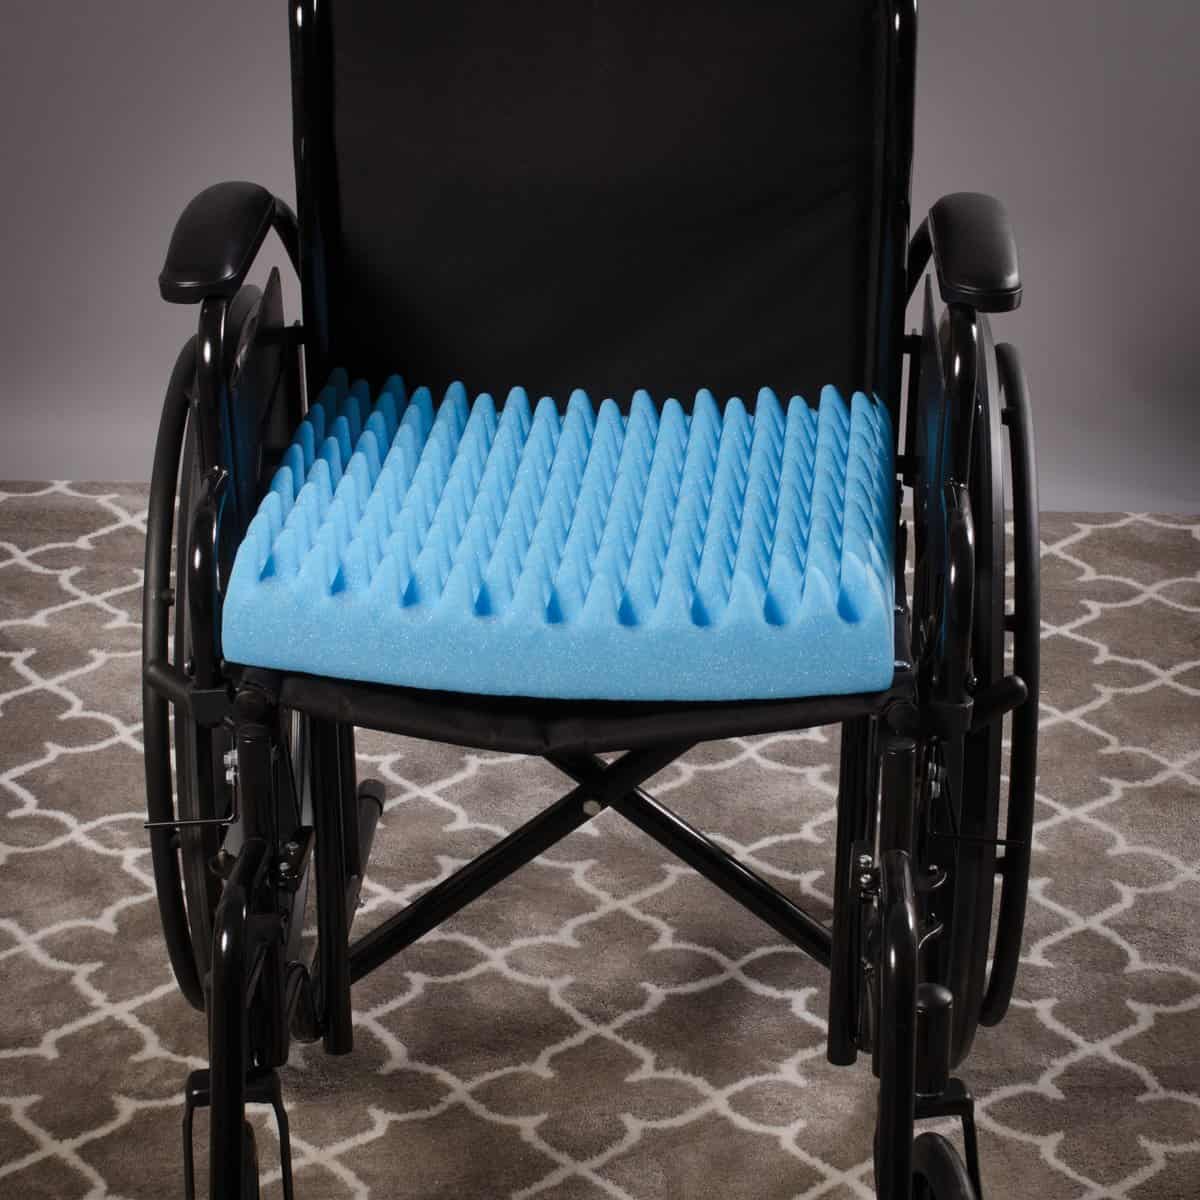 DMI Convoluted Foam Chair Pad, Blue